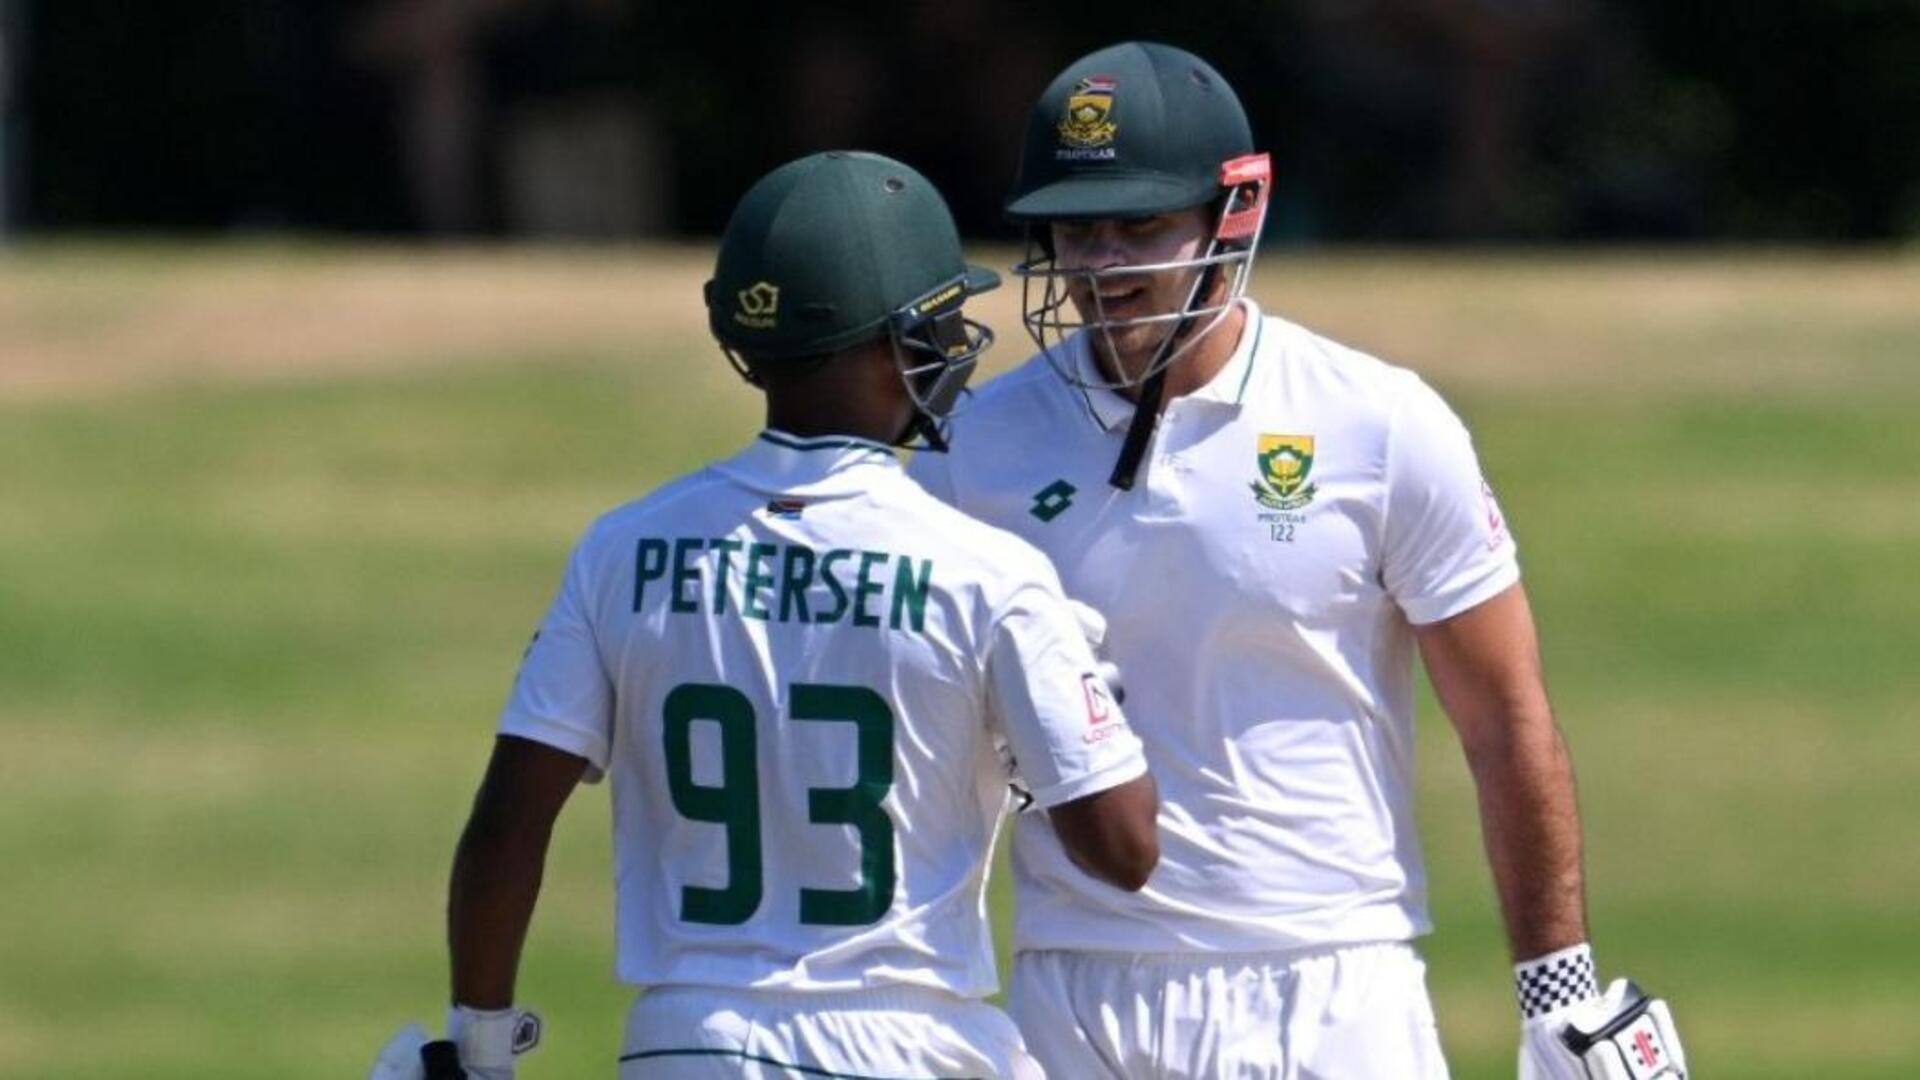 दूसरा टेस्ट: न्यूजीलैंड के खिलाफ दक्षिण अफ्रीका ने गंवाए अपने 6 विकेट, ऐसा रहा पहला दिन